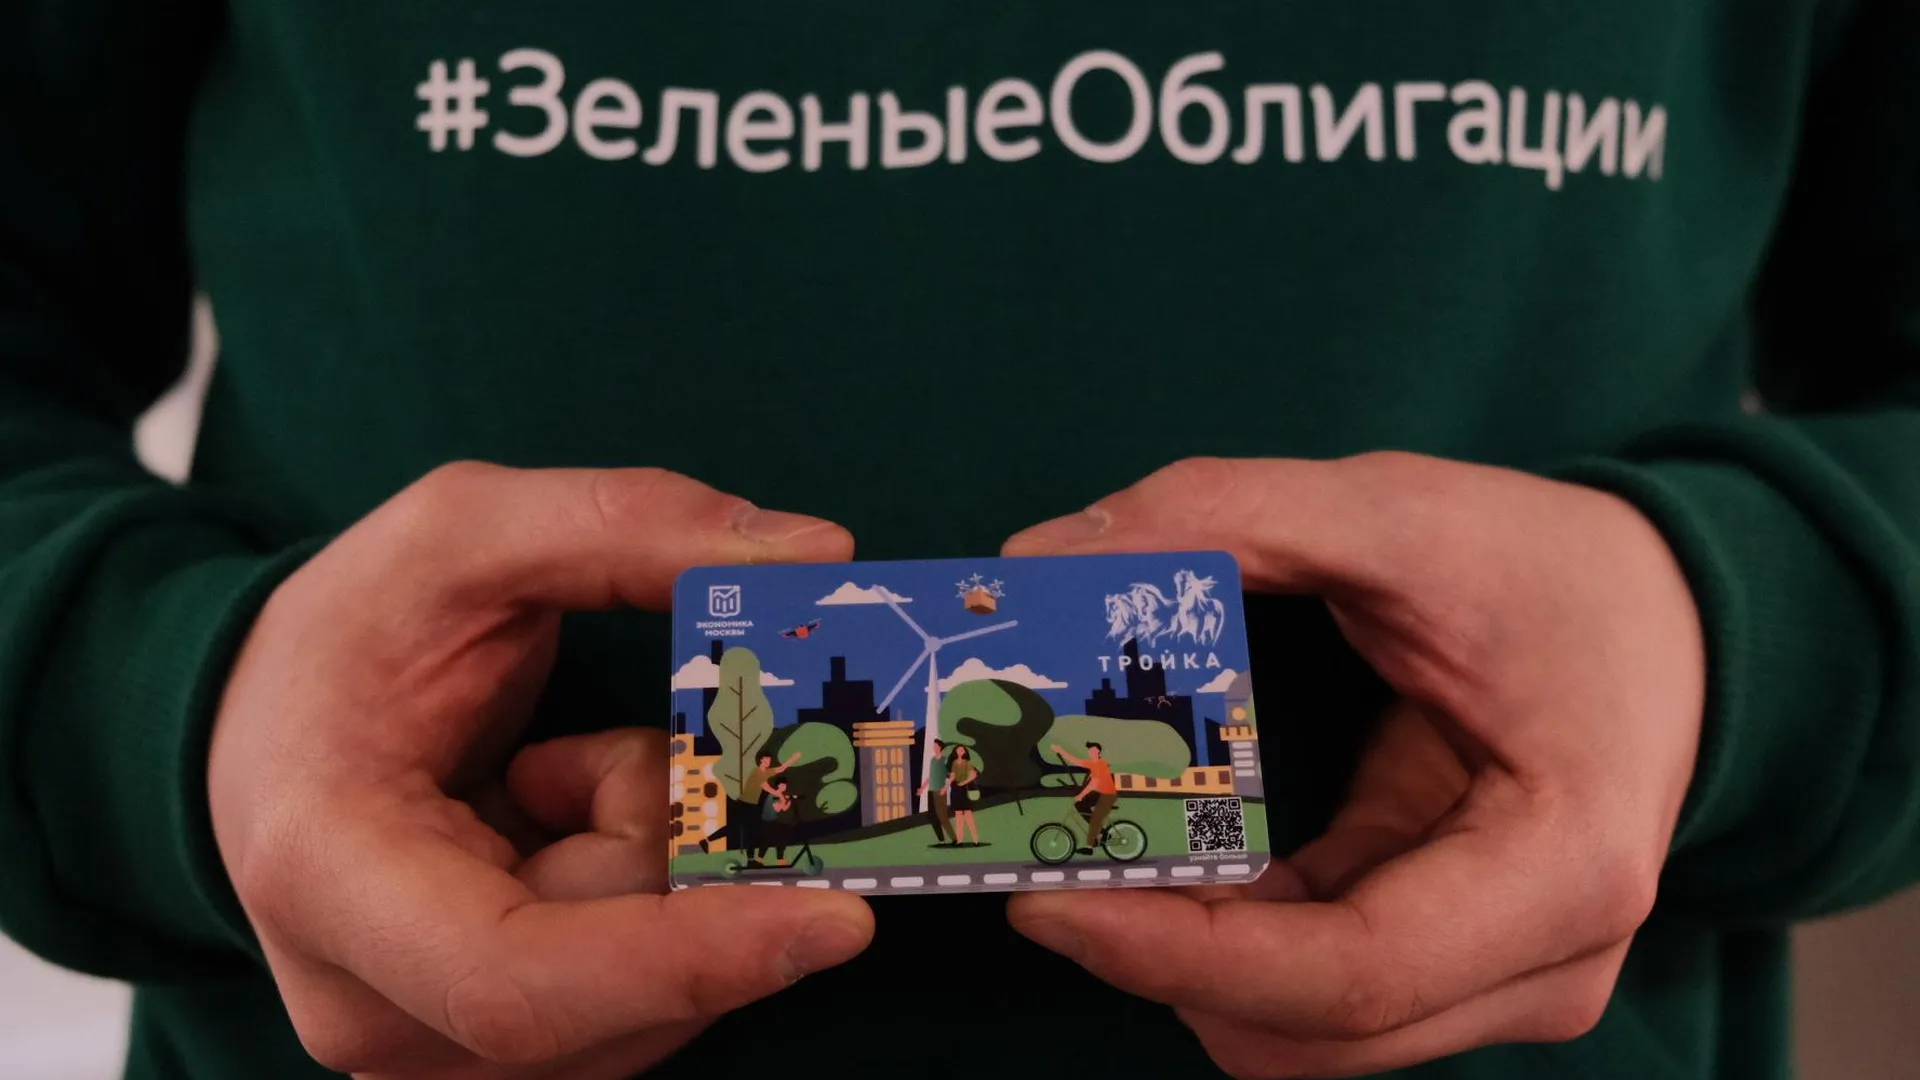 «Зеленые» облигации: для чего они нужны и как на них можно заработать в Москве